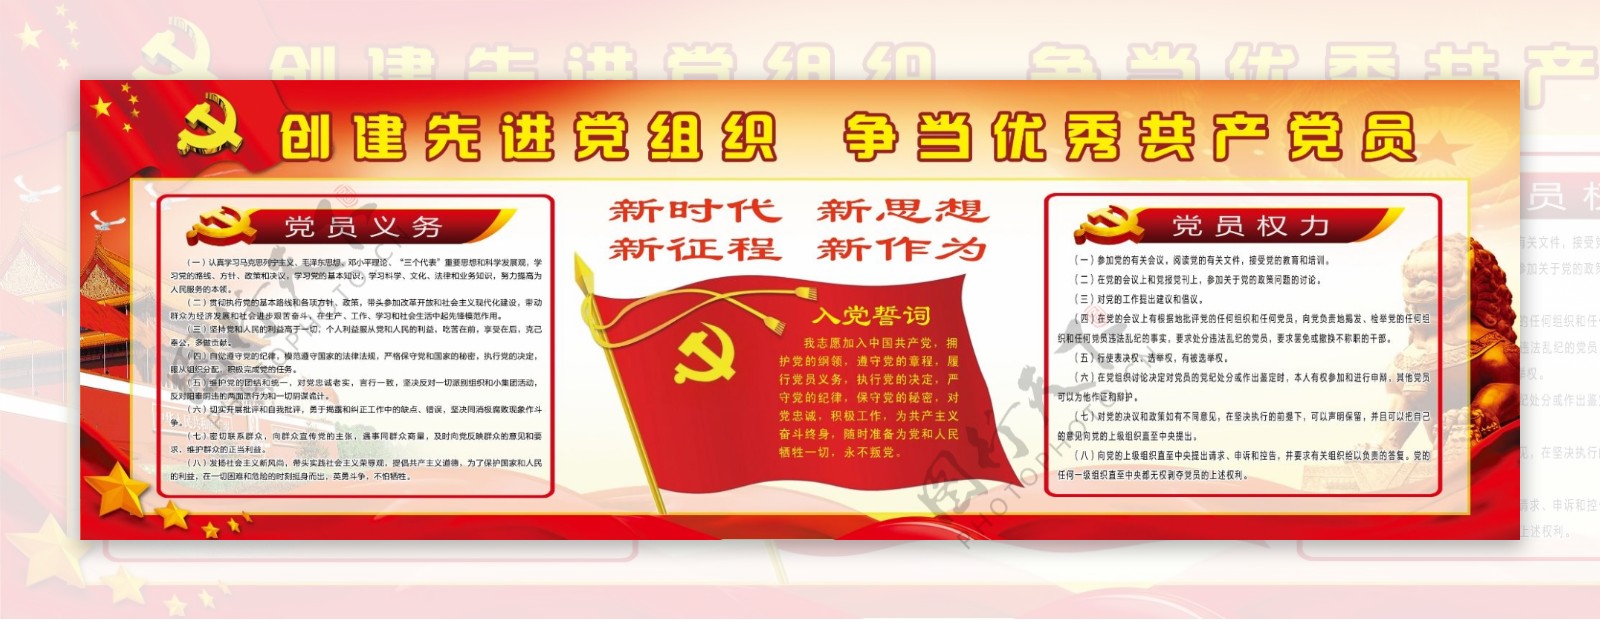 创建先进党组织争当优秀共产党